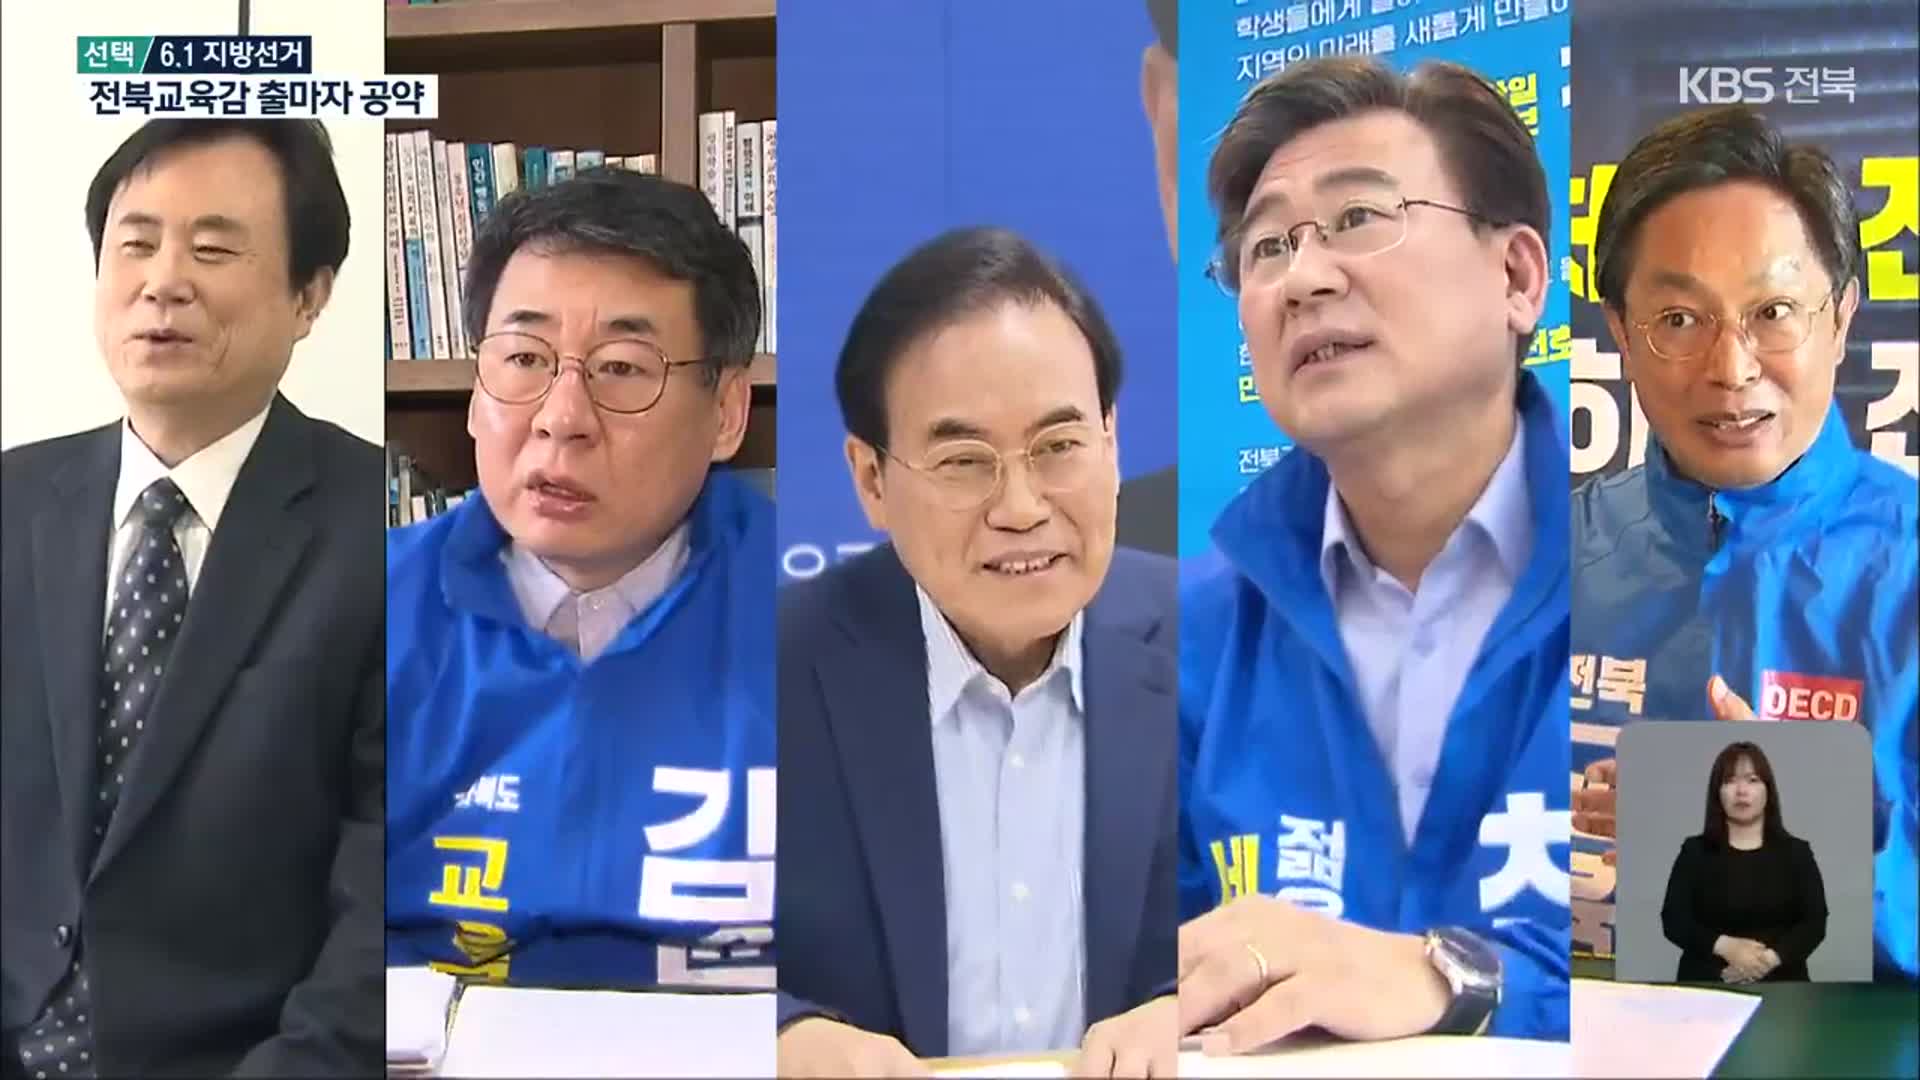 [전북] 전북교육감 선거 후보자 5명 주요 공약은?